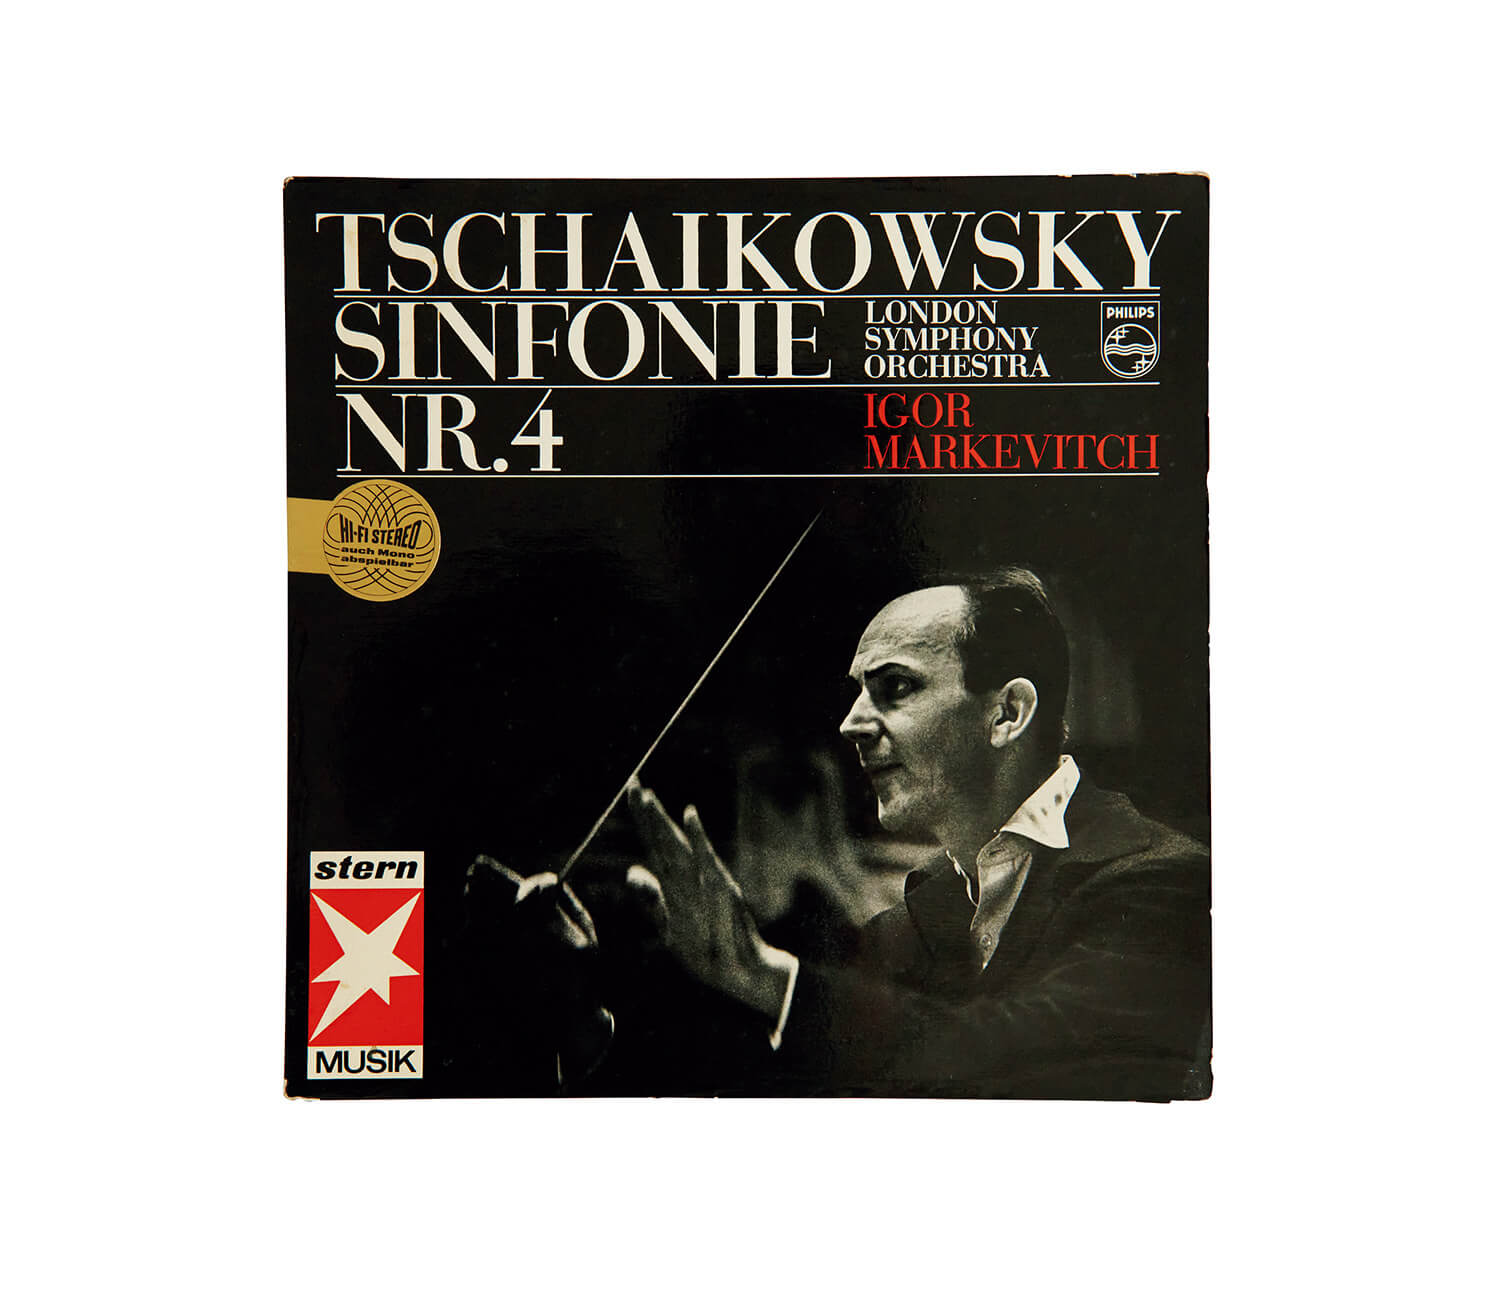 イーゴリ・マルケヴィッチ指揮、チャイコフスキー「交響曲第4番 ヘ短調」レコードジャケット